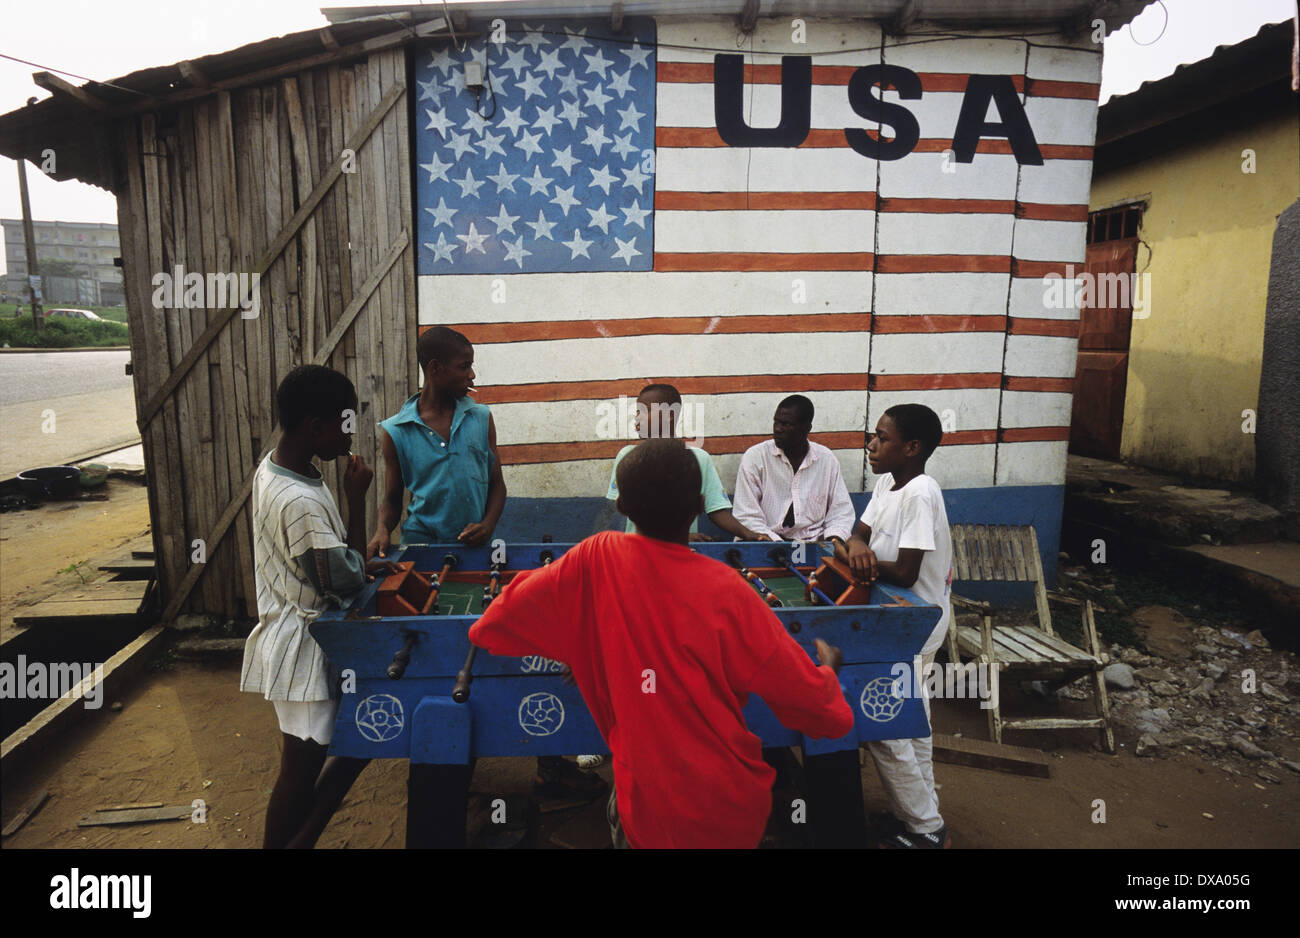 Kinder spielen Fußball unter amerikanischer Flagge Wandbild, Yopougon Township, gegenüber von Abidjan, Elfenbeinküste, Afrika Stockfoto